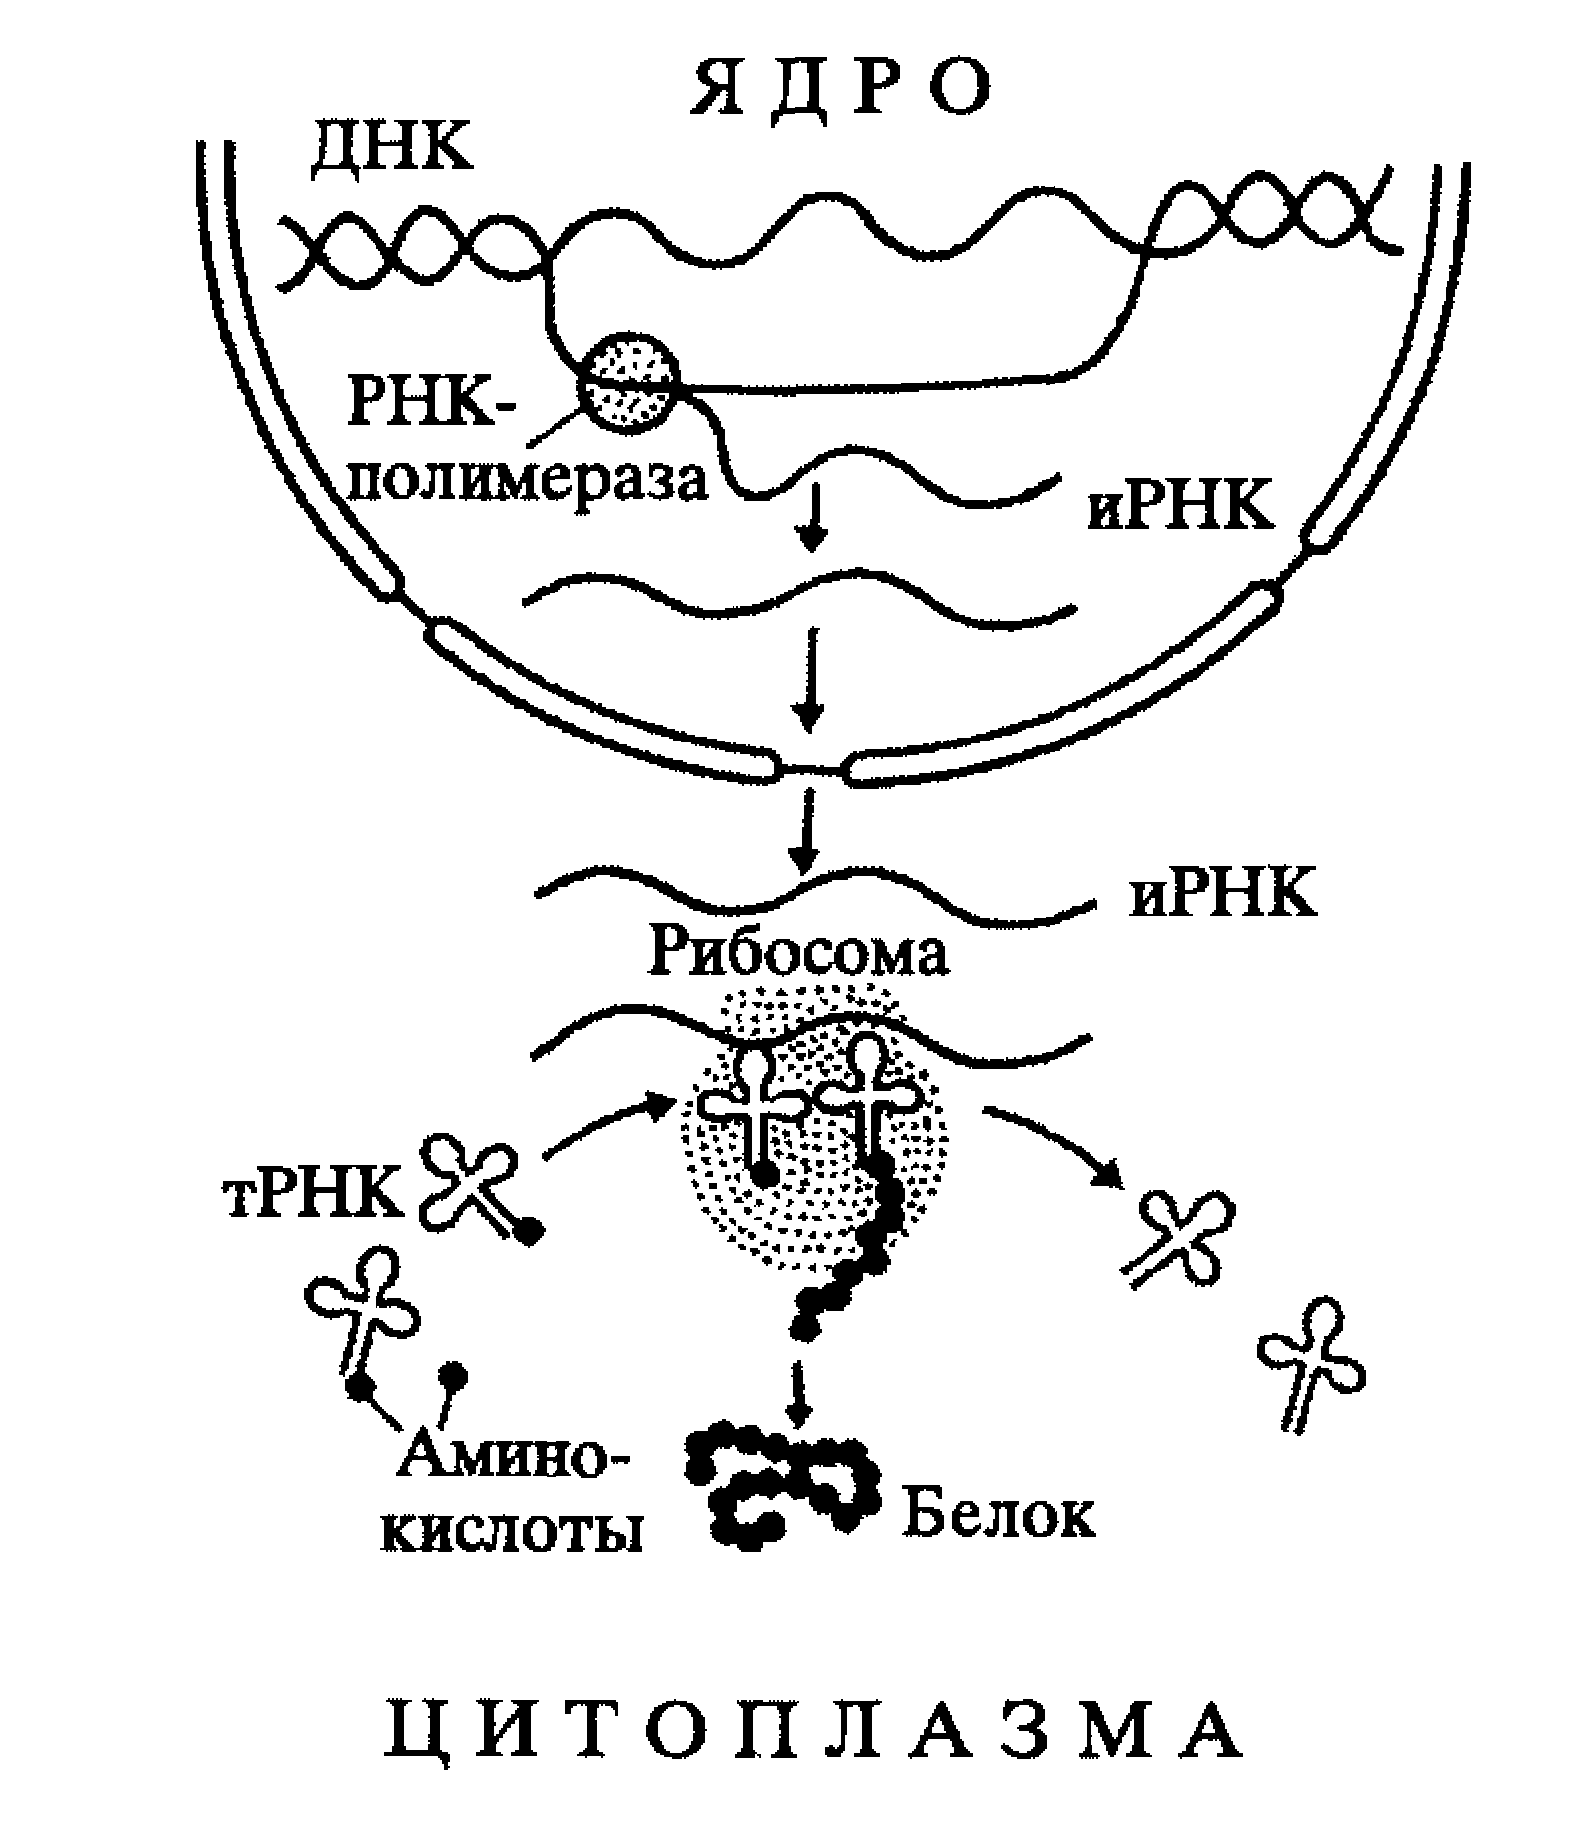 4 этапы синтеза белка. Трансляция Биосинтез белка схема. Биосинтез белка схема. Схема процесса транскрипции Биосинтез белка. Схема биосинтеза белка в живой клетке.